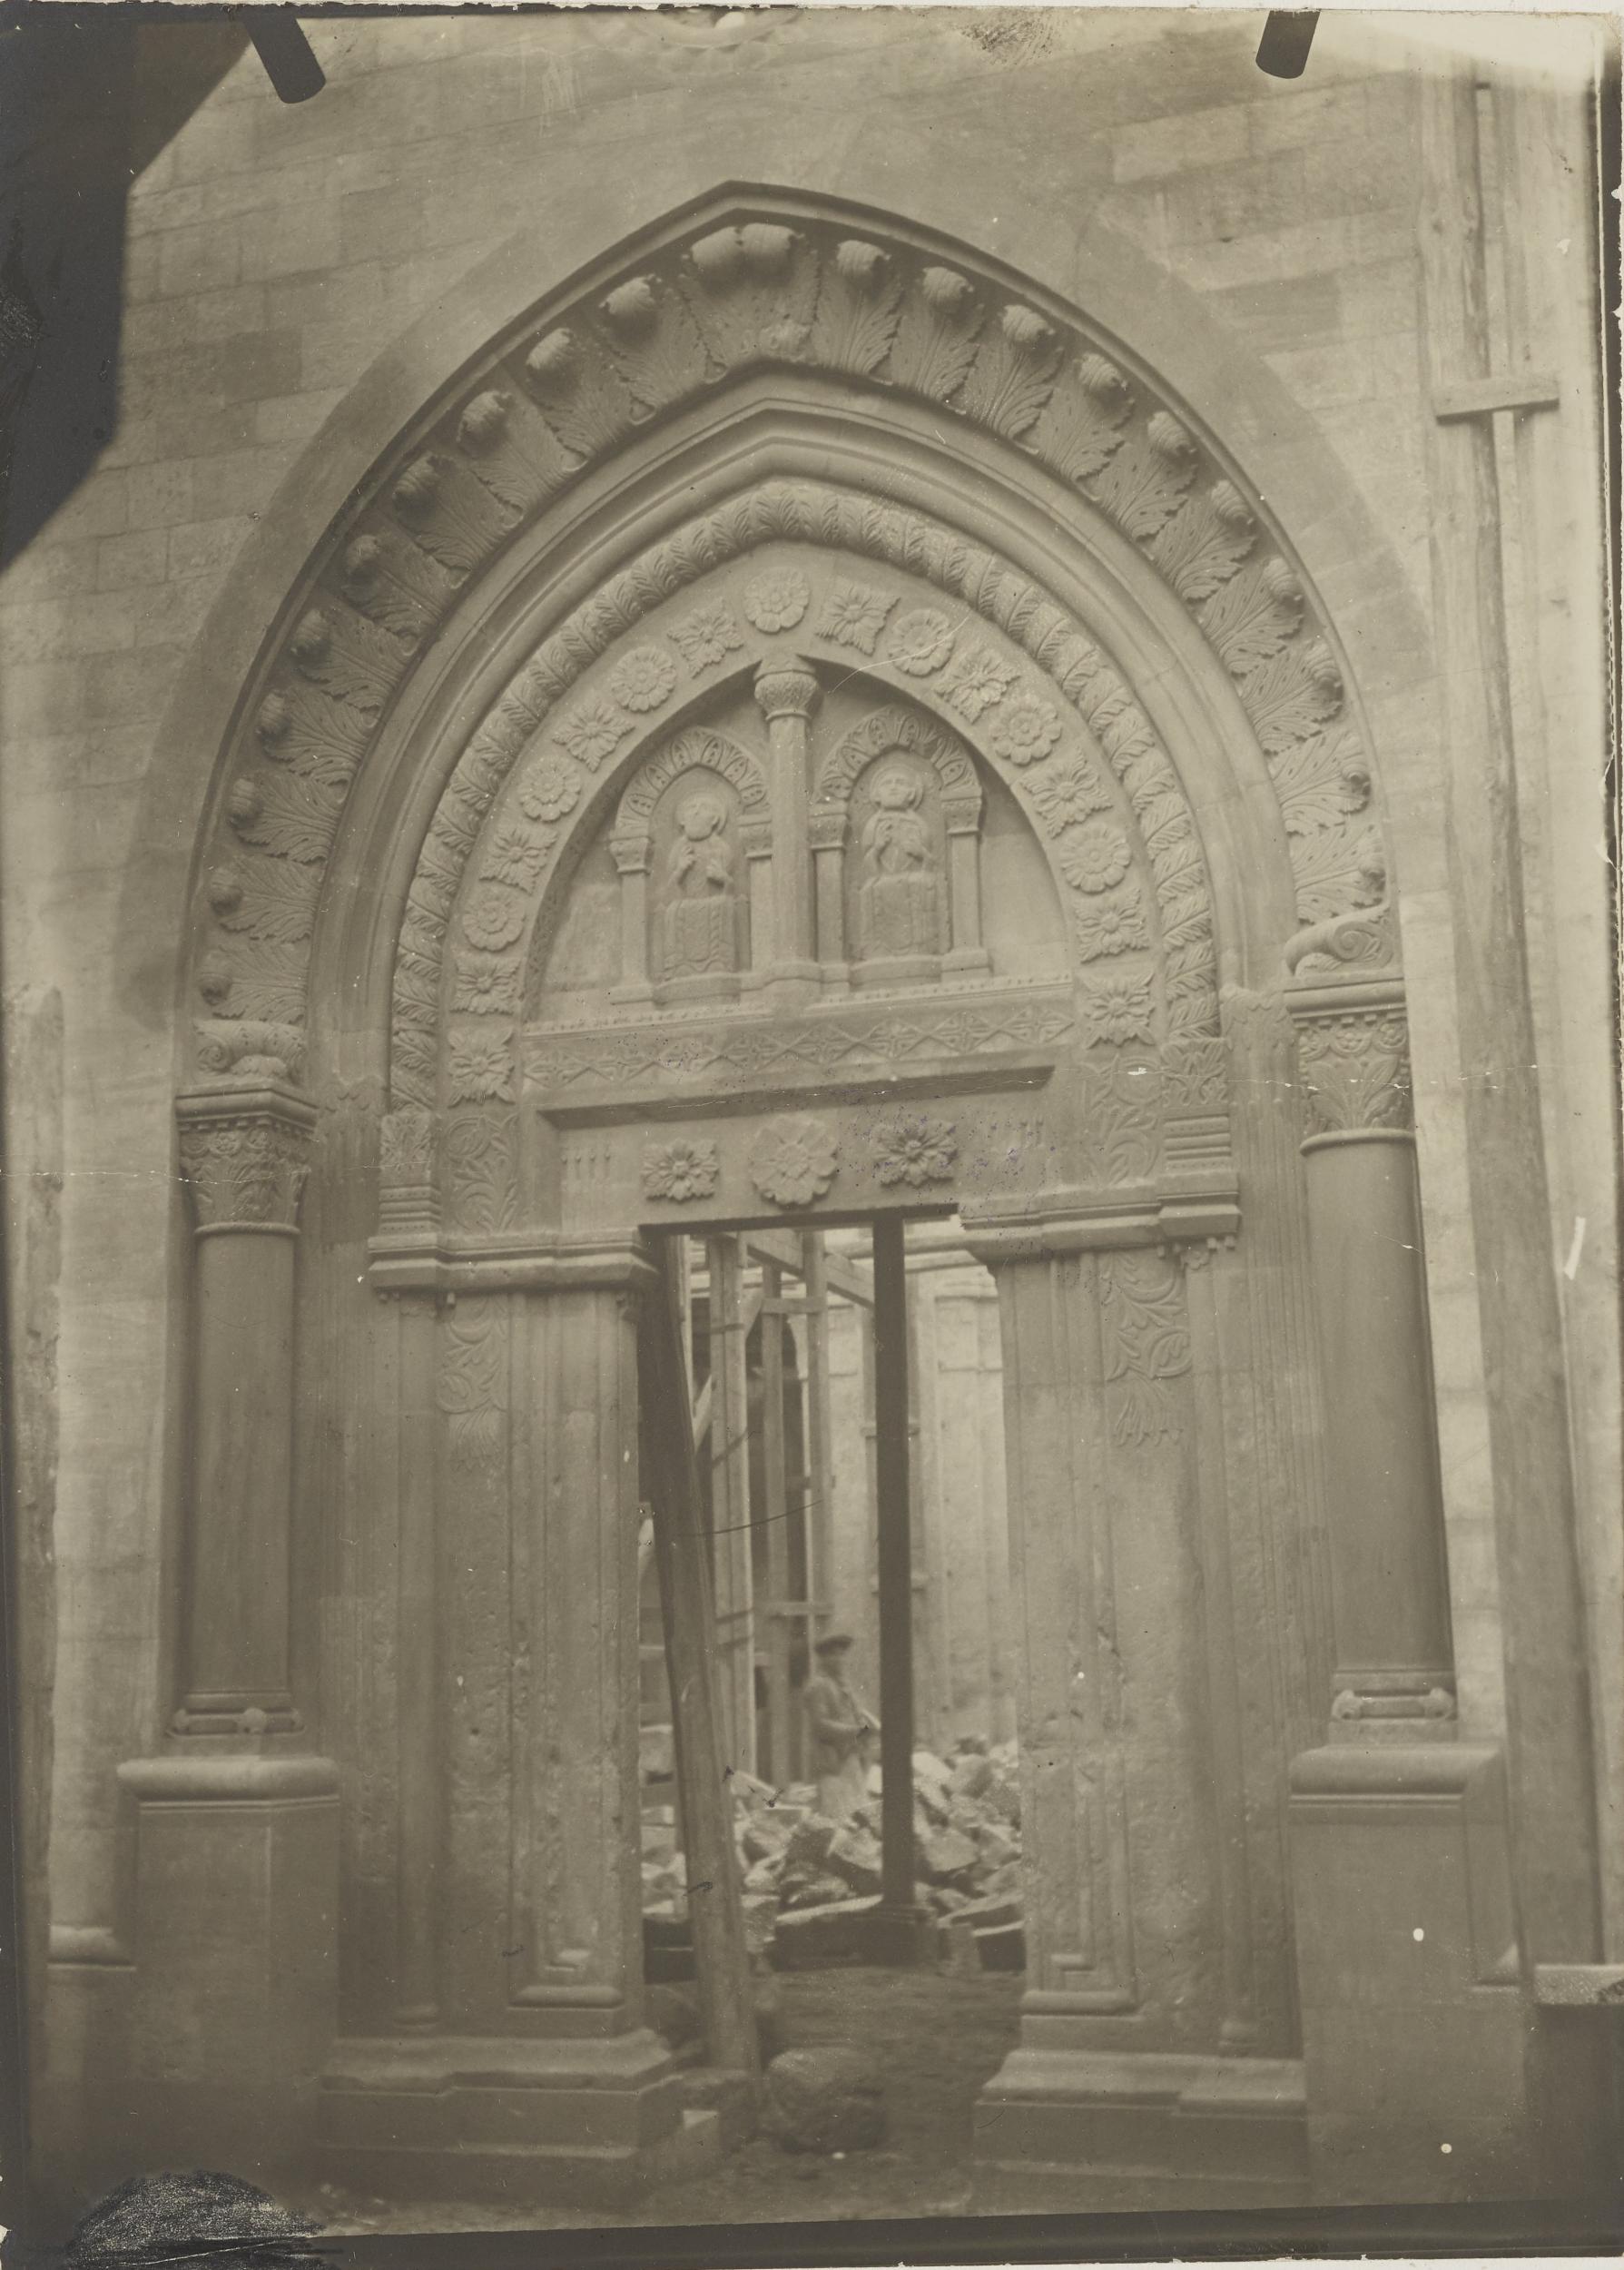 Fotografo non identificato, Conversano - Cattedrale, portale laterale, 1901-1925, gelatina ai sali d'argento/carta, MPI155330